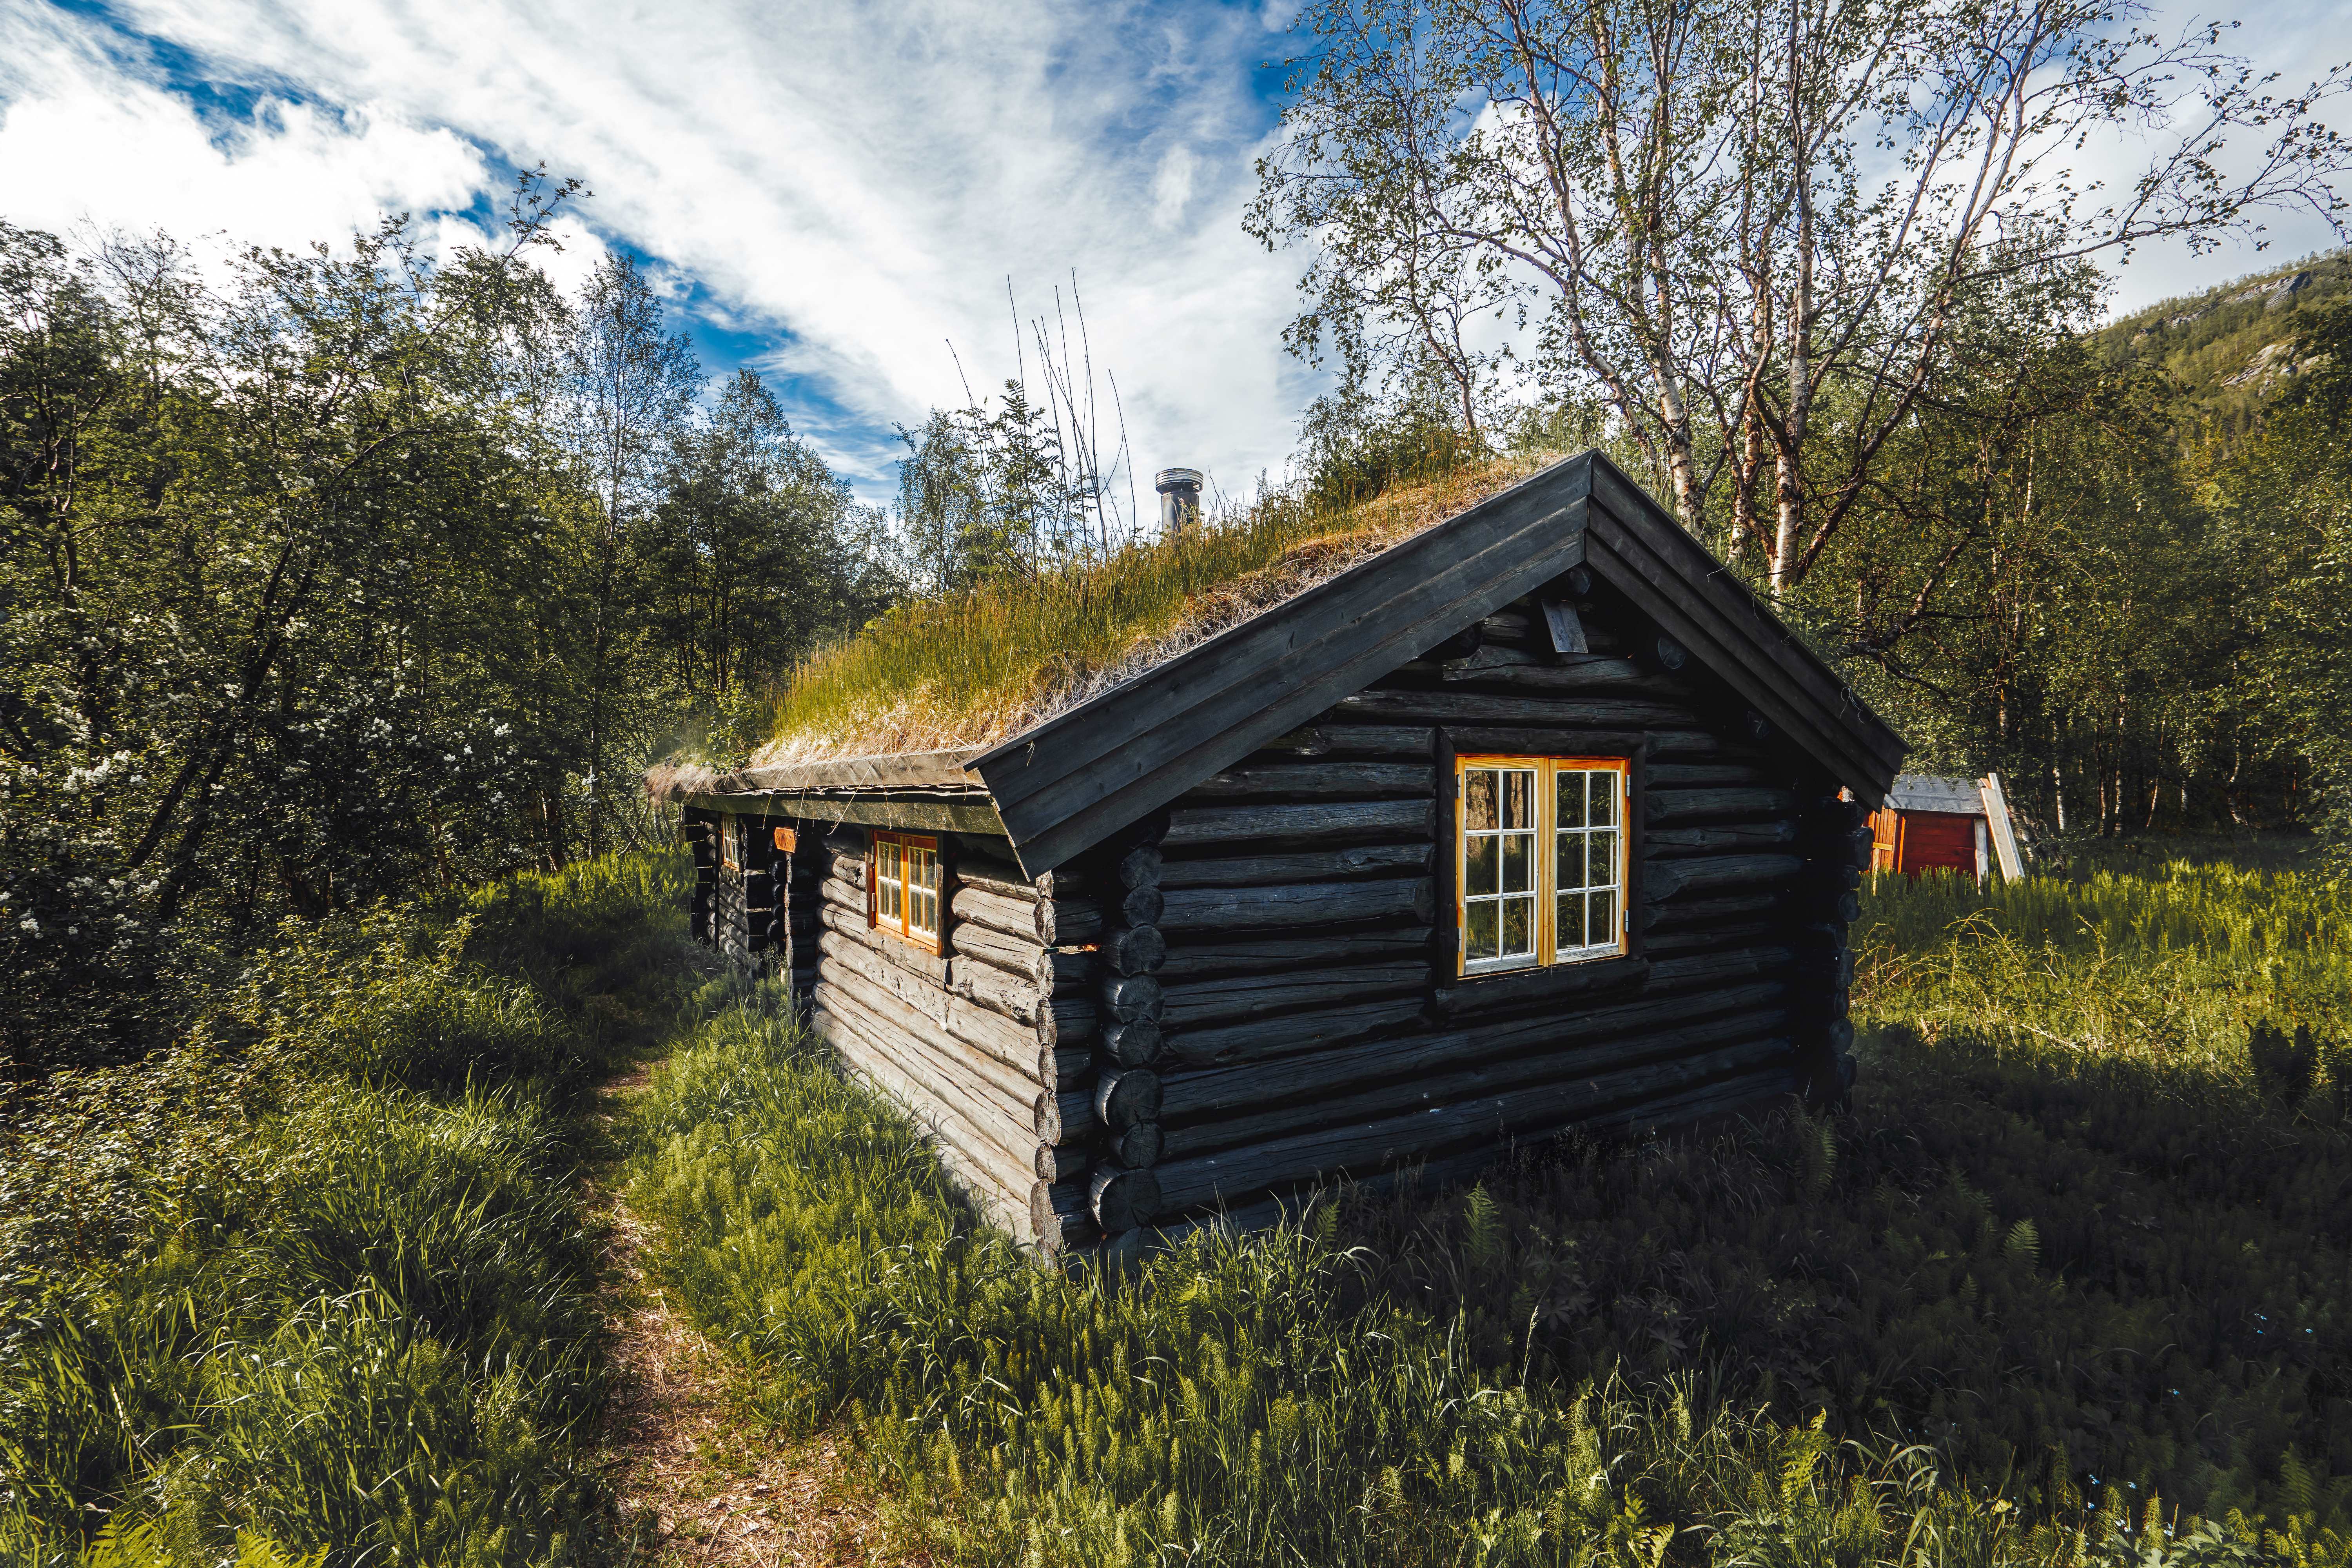 Sieimma cabin in Reisa National Park